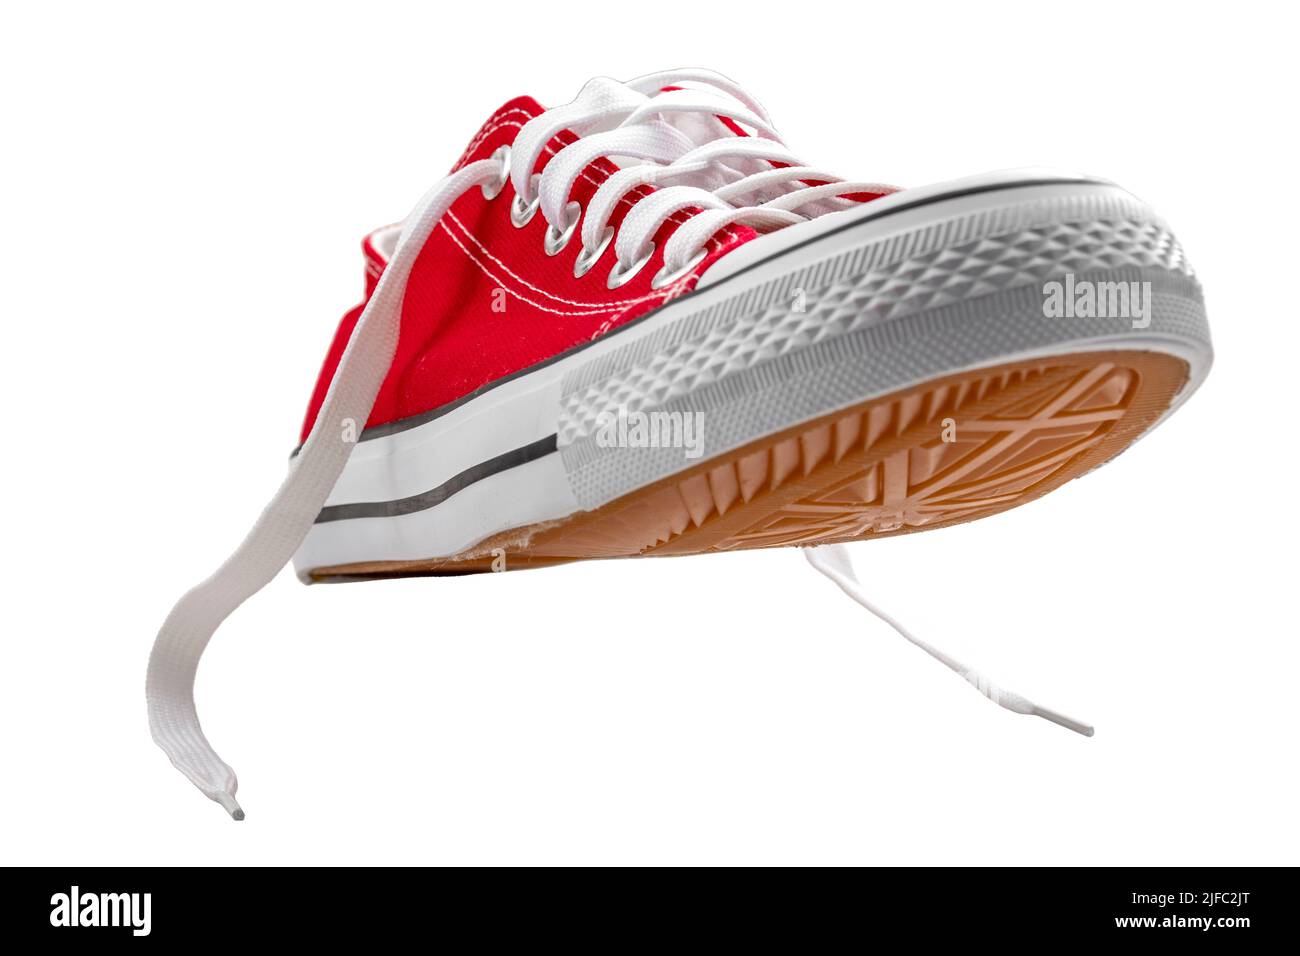 Zapatillas deportivas de lona vintage de color rojo vivo con cordones, adecuadas para jugar al baloncesto, al tenis o al running, aisladas sobre blanco con un recorte de ruta Foto de stock